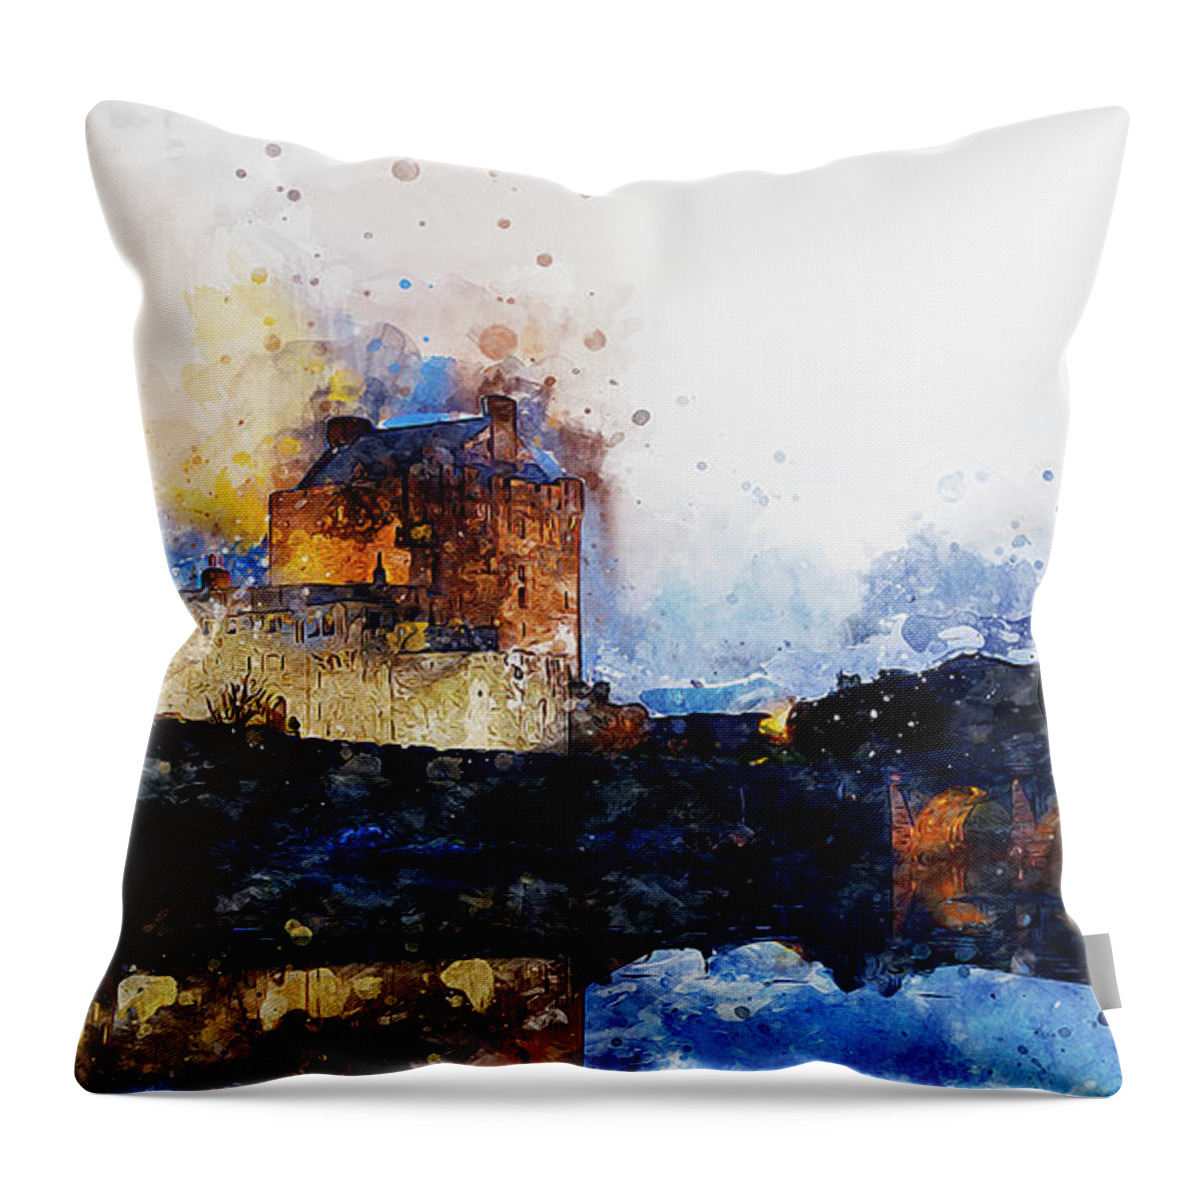 Eilean Donan Throw Pillow featuring the painting Eilean Donan Castle - 05 by AM FineArtPrints